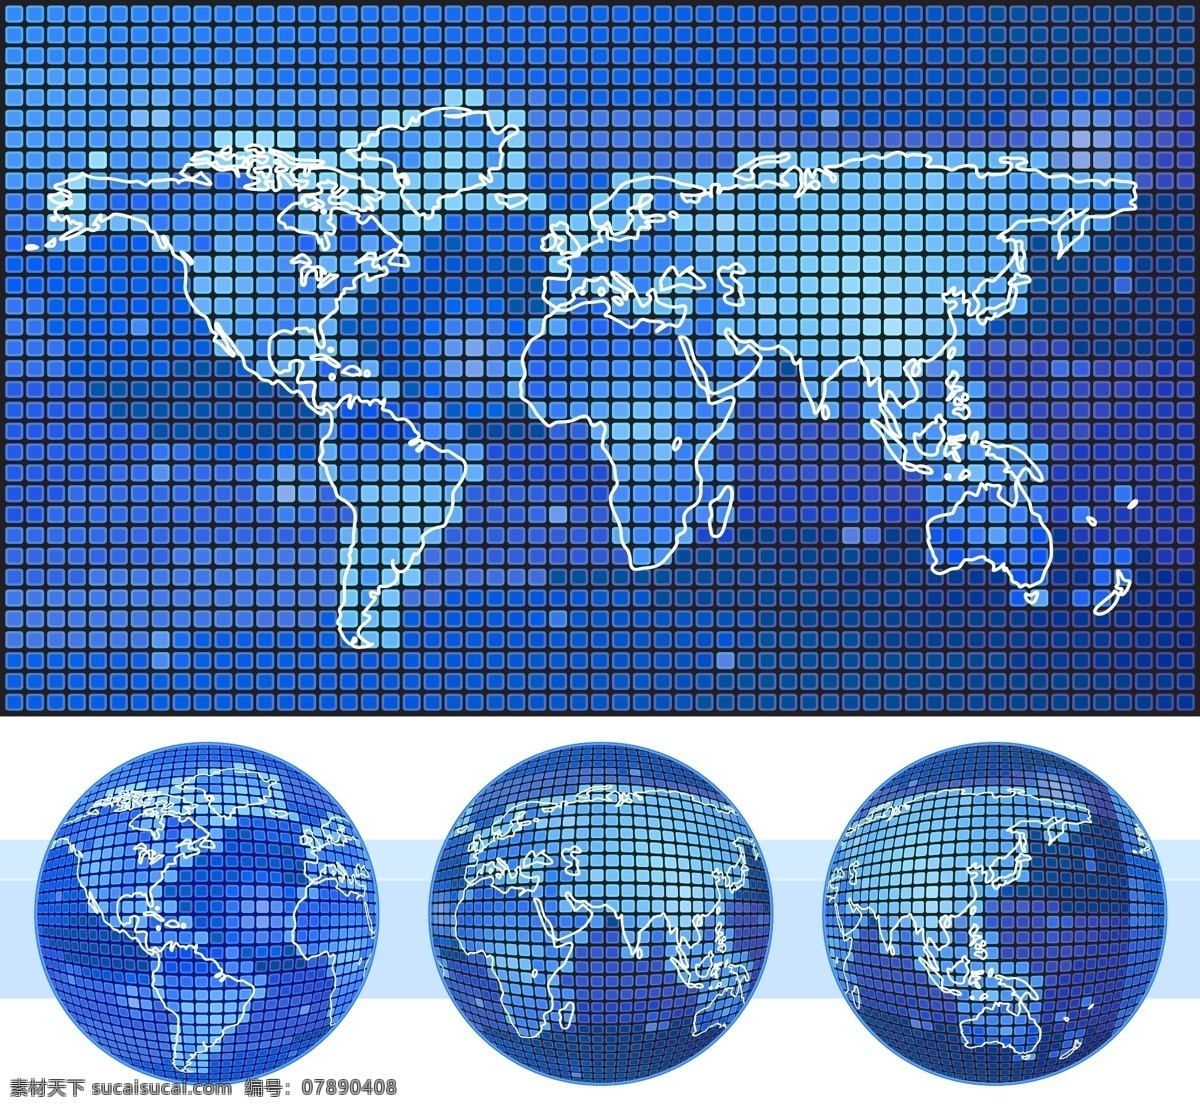 地图图标设计 地图 地图素材 地图设计 矢量地图 蓝色地图 国外地图 图标 地图图标 圆形图标 底纹边框 矢量素材 白色